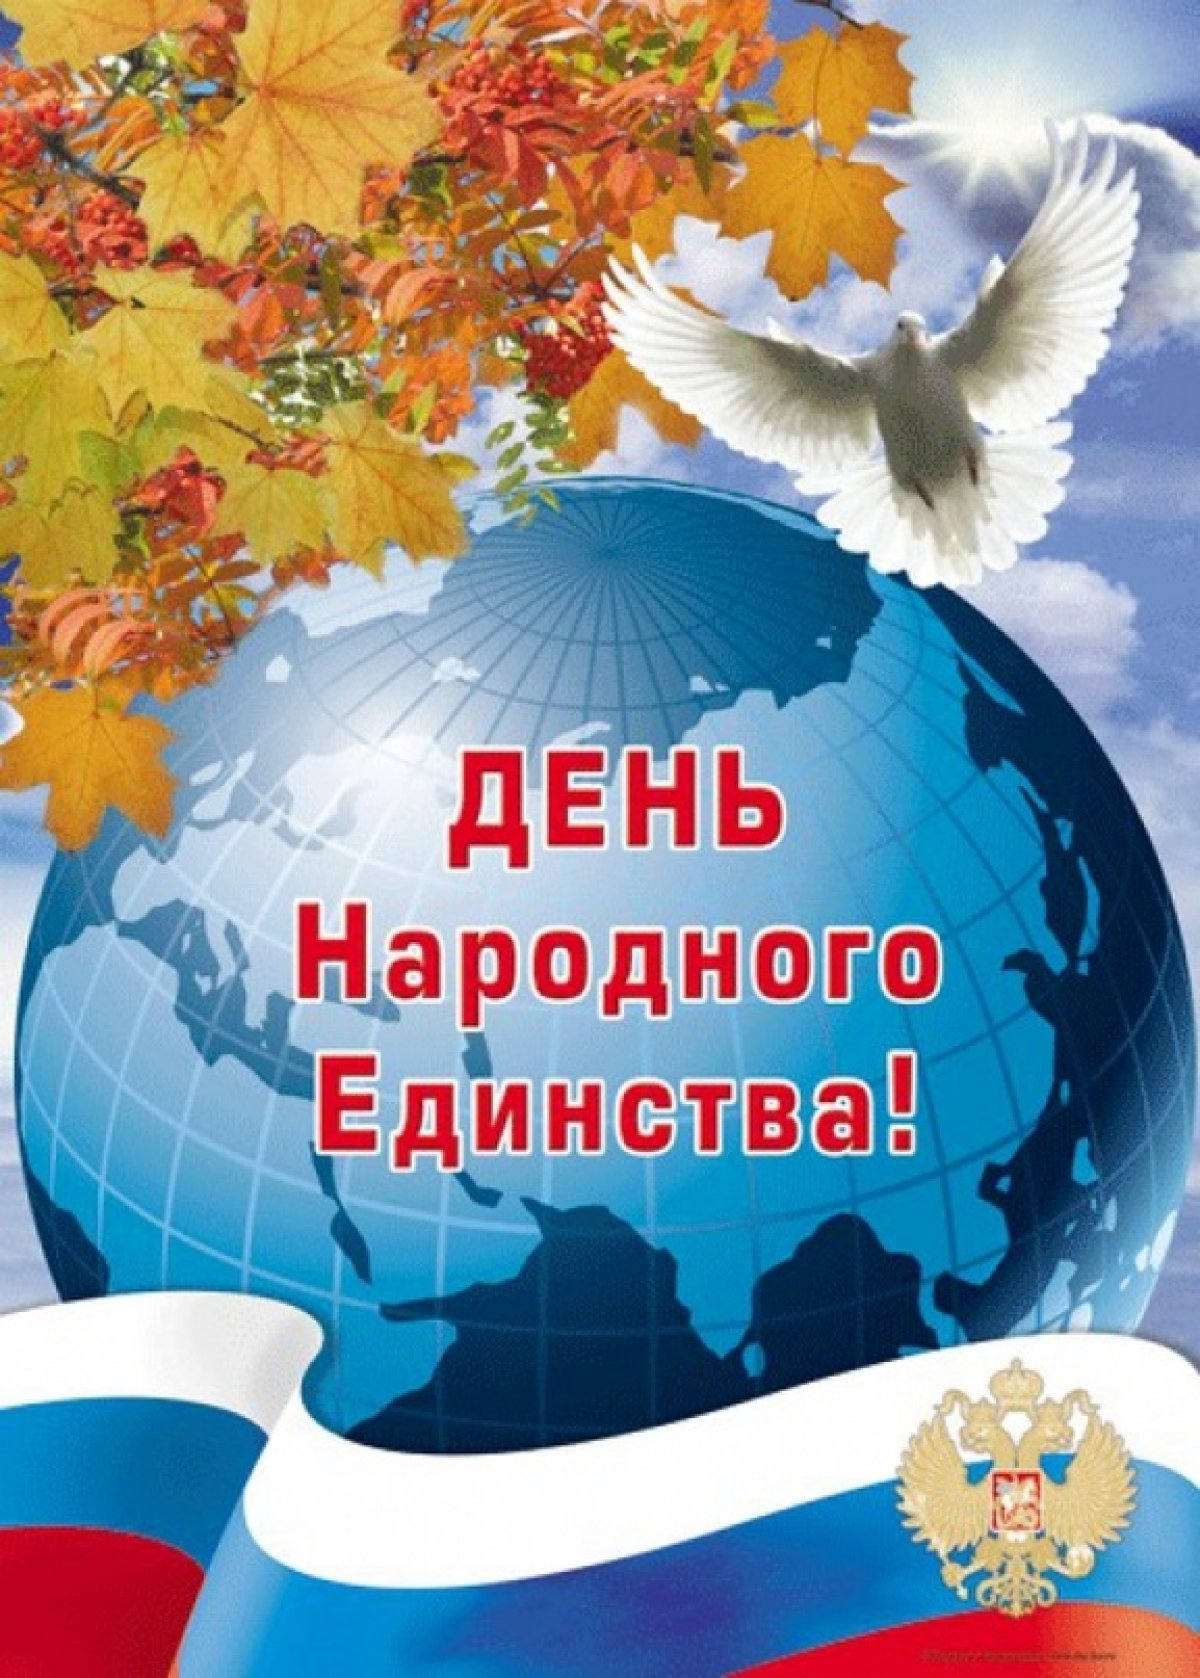 В нашей стране проживают представители разных национальностей, но все мы — один народ, мы россияне! Давайте помнить об этом и гордиться своей Родиной. С Днем народного единства!!